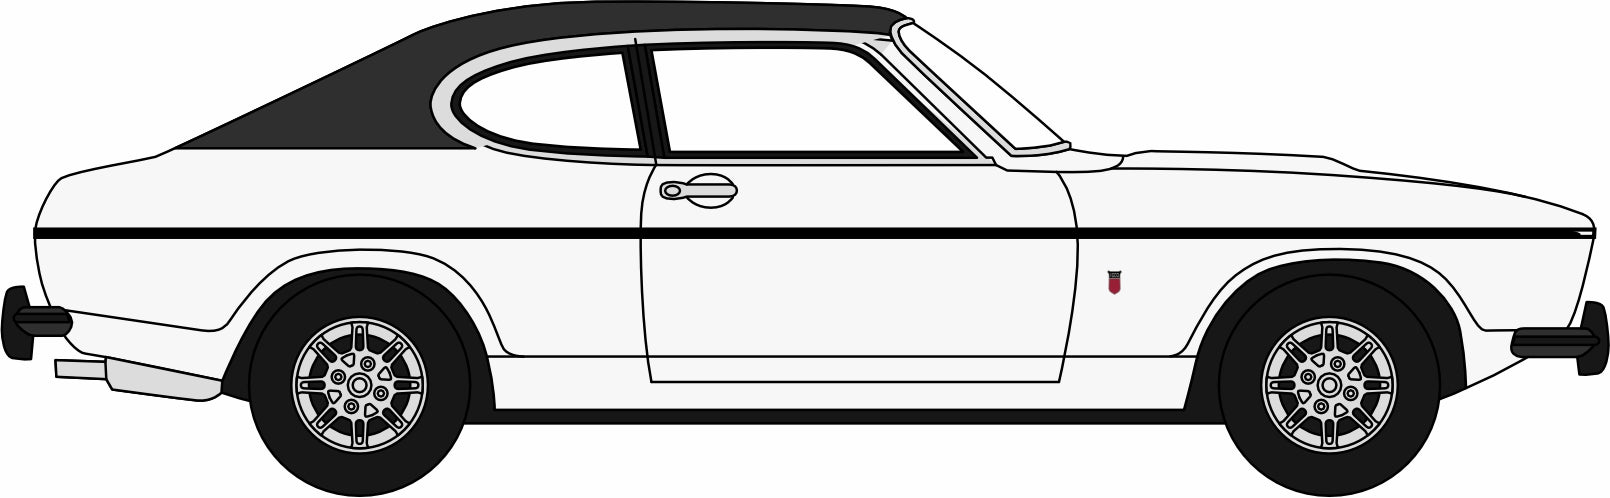 Oxford Diecast White Ford Capri Mk2 - 1:76 Scale 76CPR003 Left